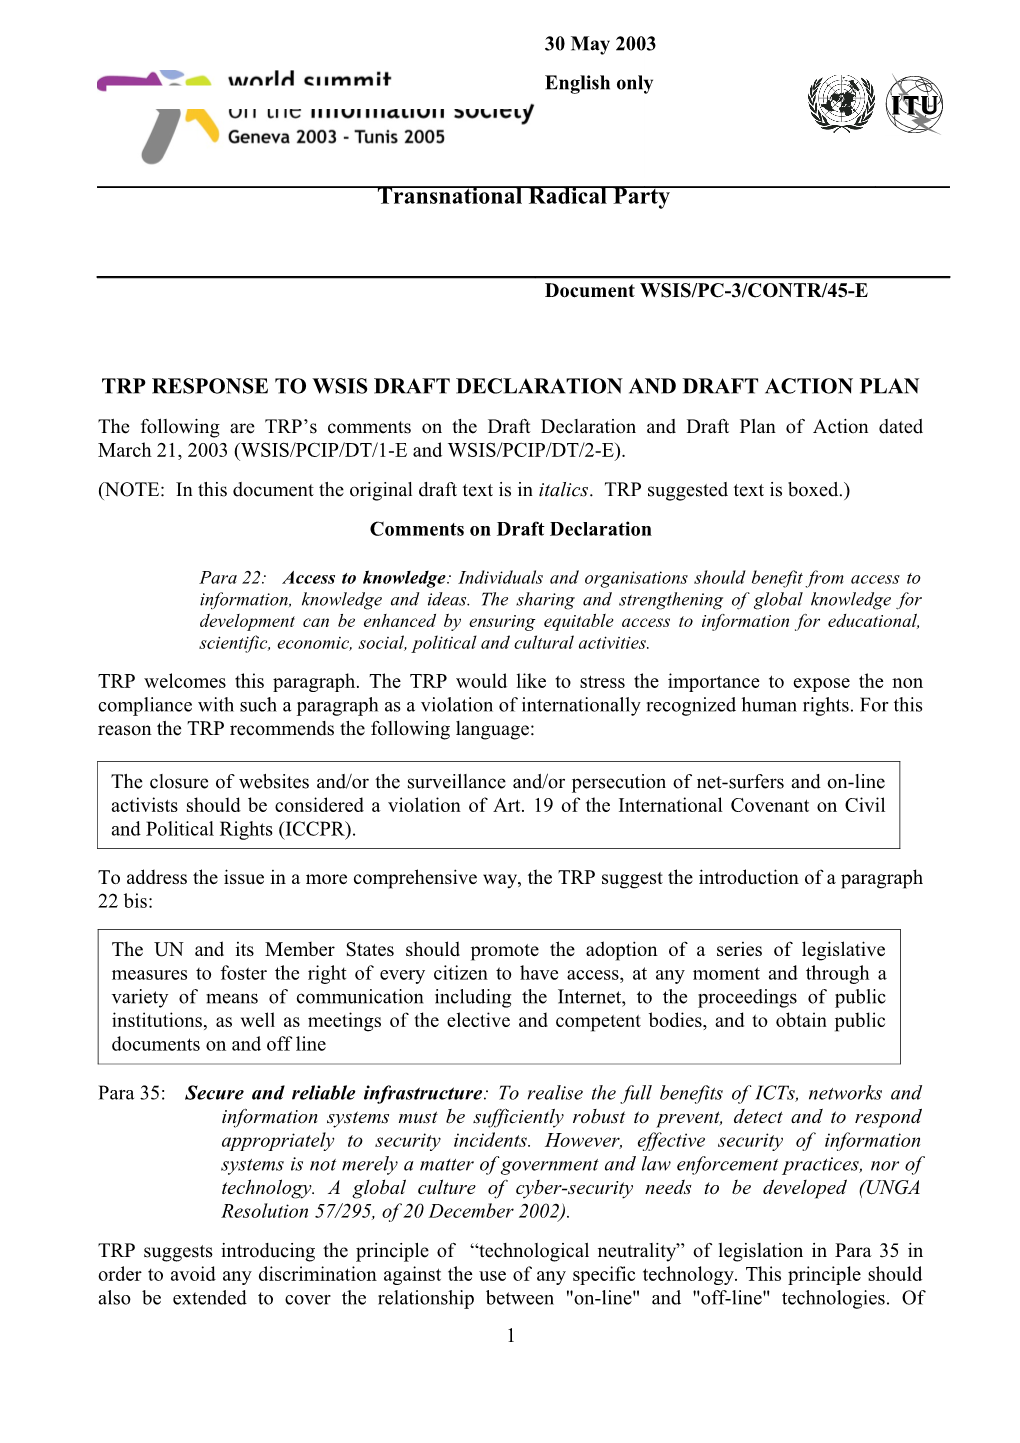 Trp Response to Wsis Draft Declaration and Draft Action Plan